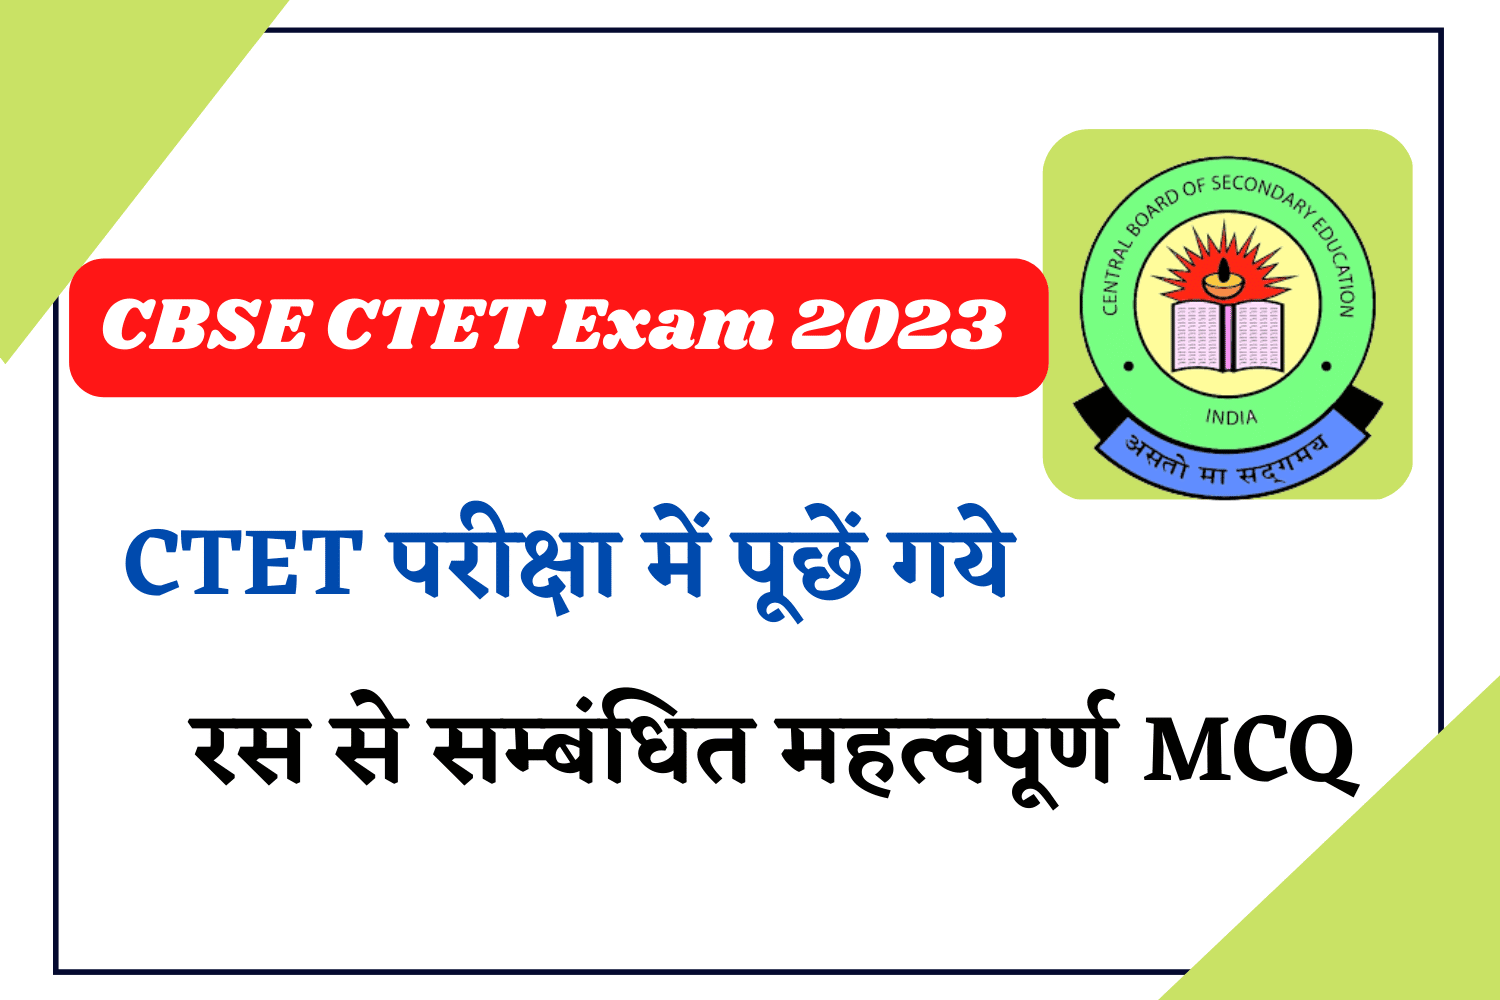 CBSE CTET Exam 2023 | हिन्दी भाषा की महत्वपूर्ण टॉपिक - रस से सम्बंधित प्रश्न